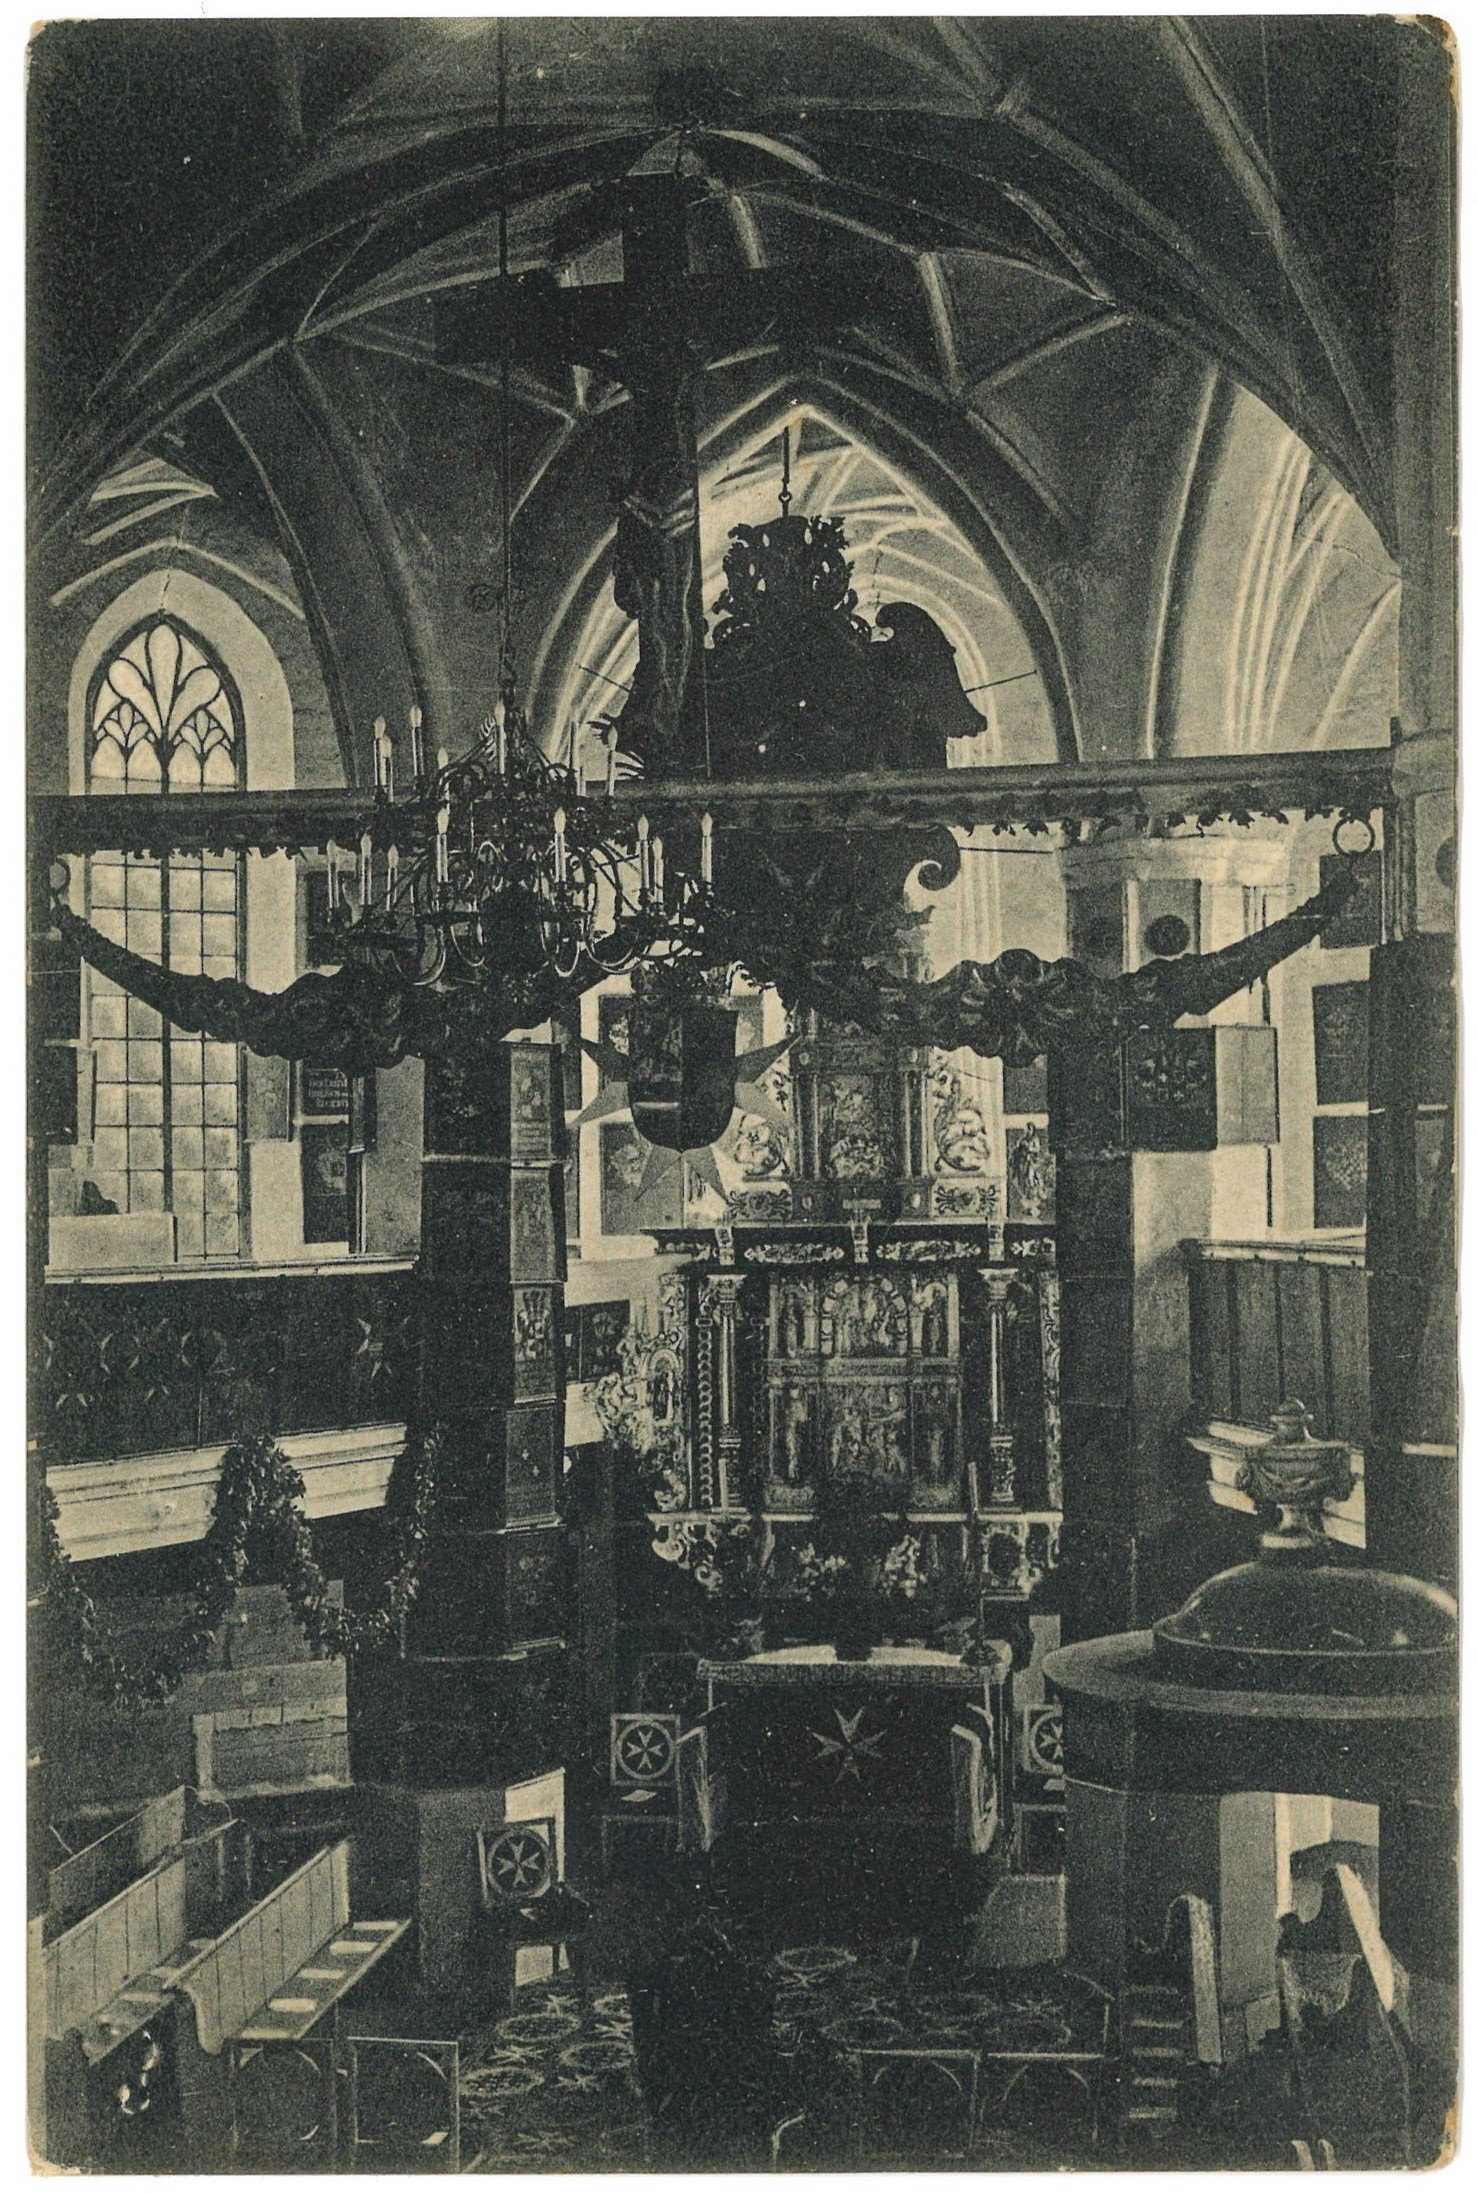 Sonnenburg (Neumark) [Słońsk]: Inneres der Johanniterordenskirche (Landesgeschichtliche Vereinigung für die Mark Brandenburg e.V., Archiv CC BY)